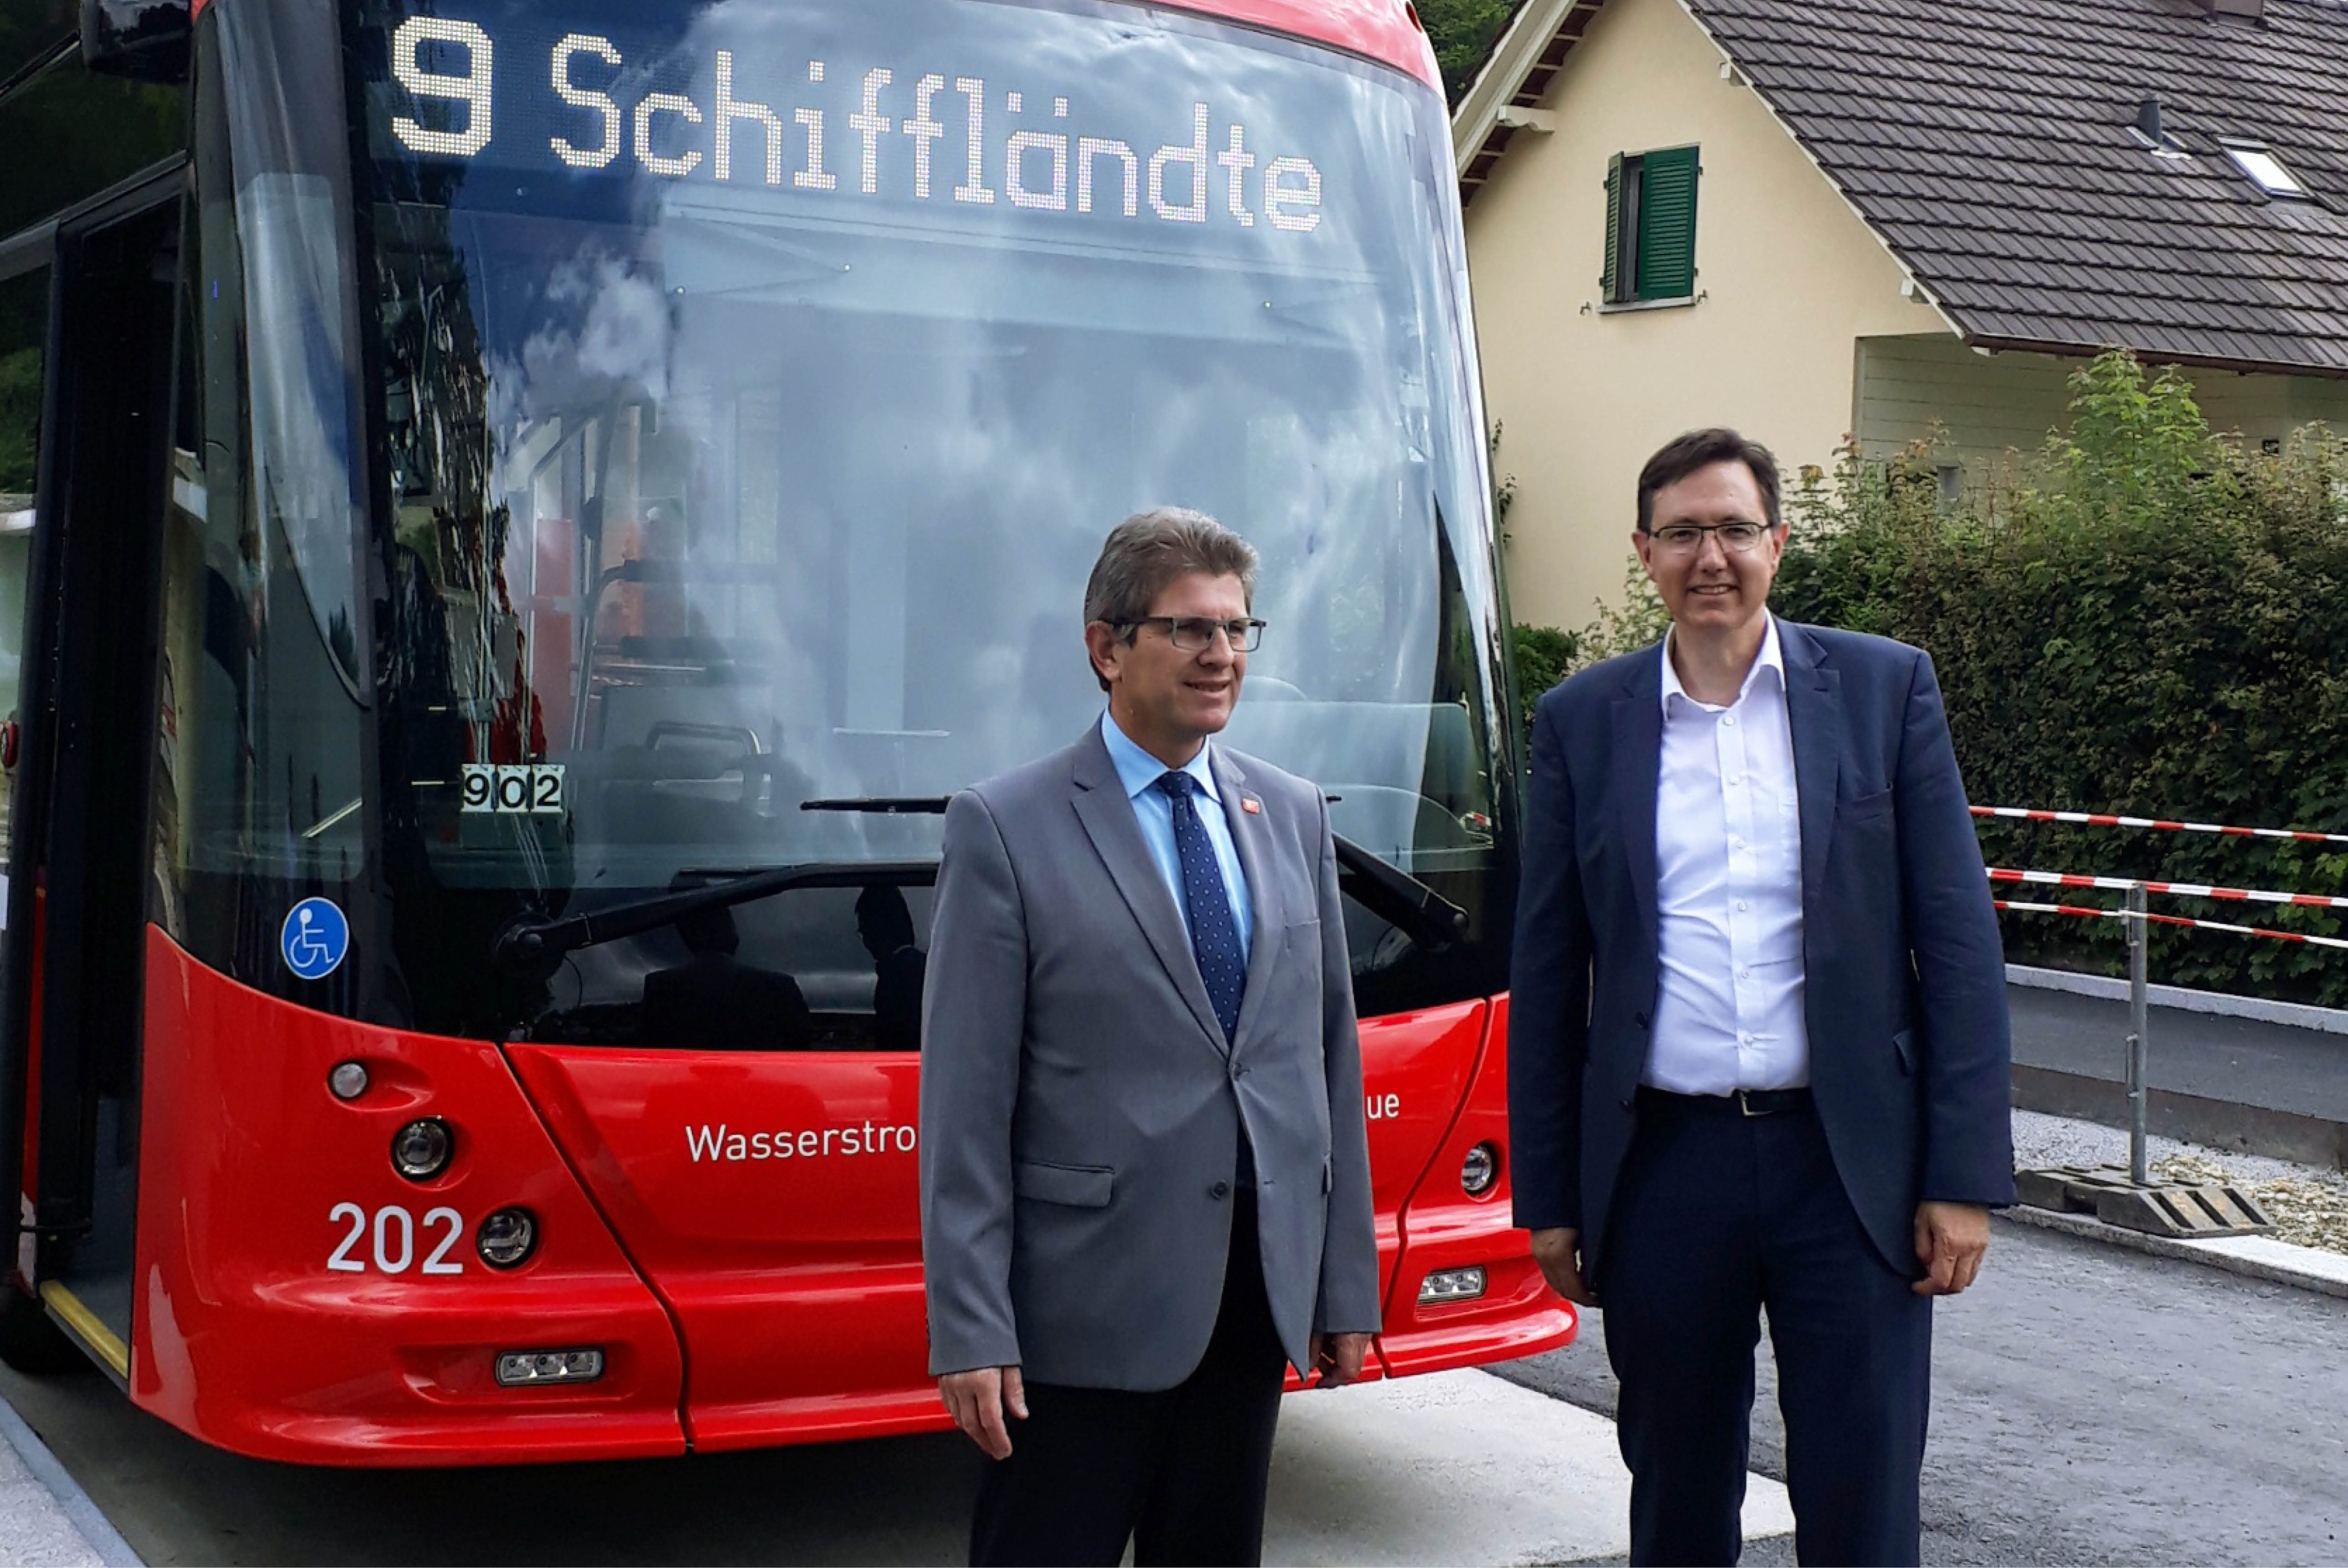 Hess-Gelenkbusse lighTram Biel TIR transNews